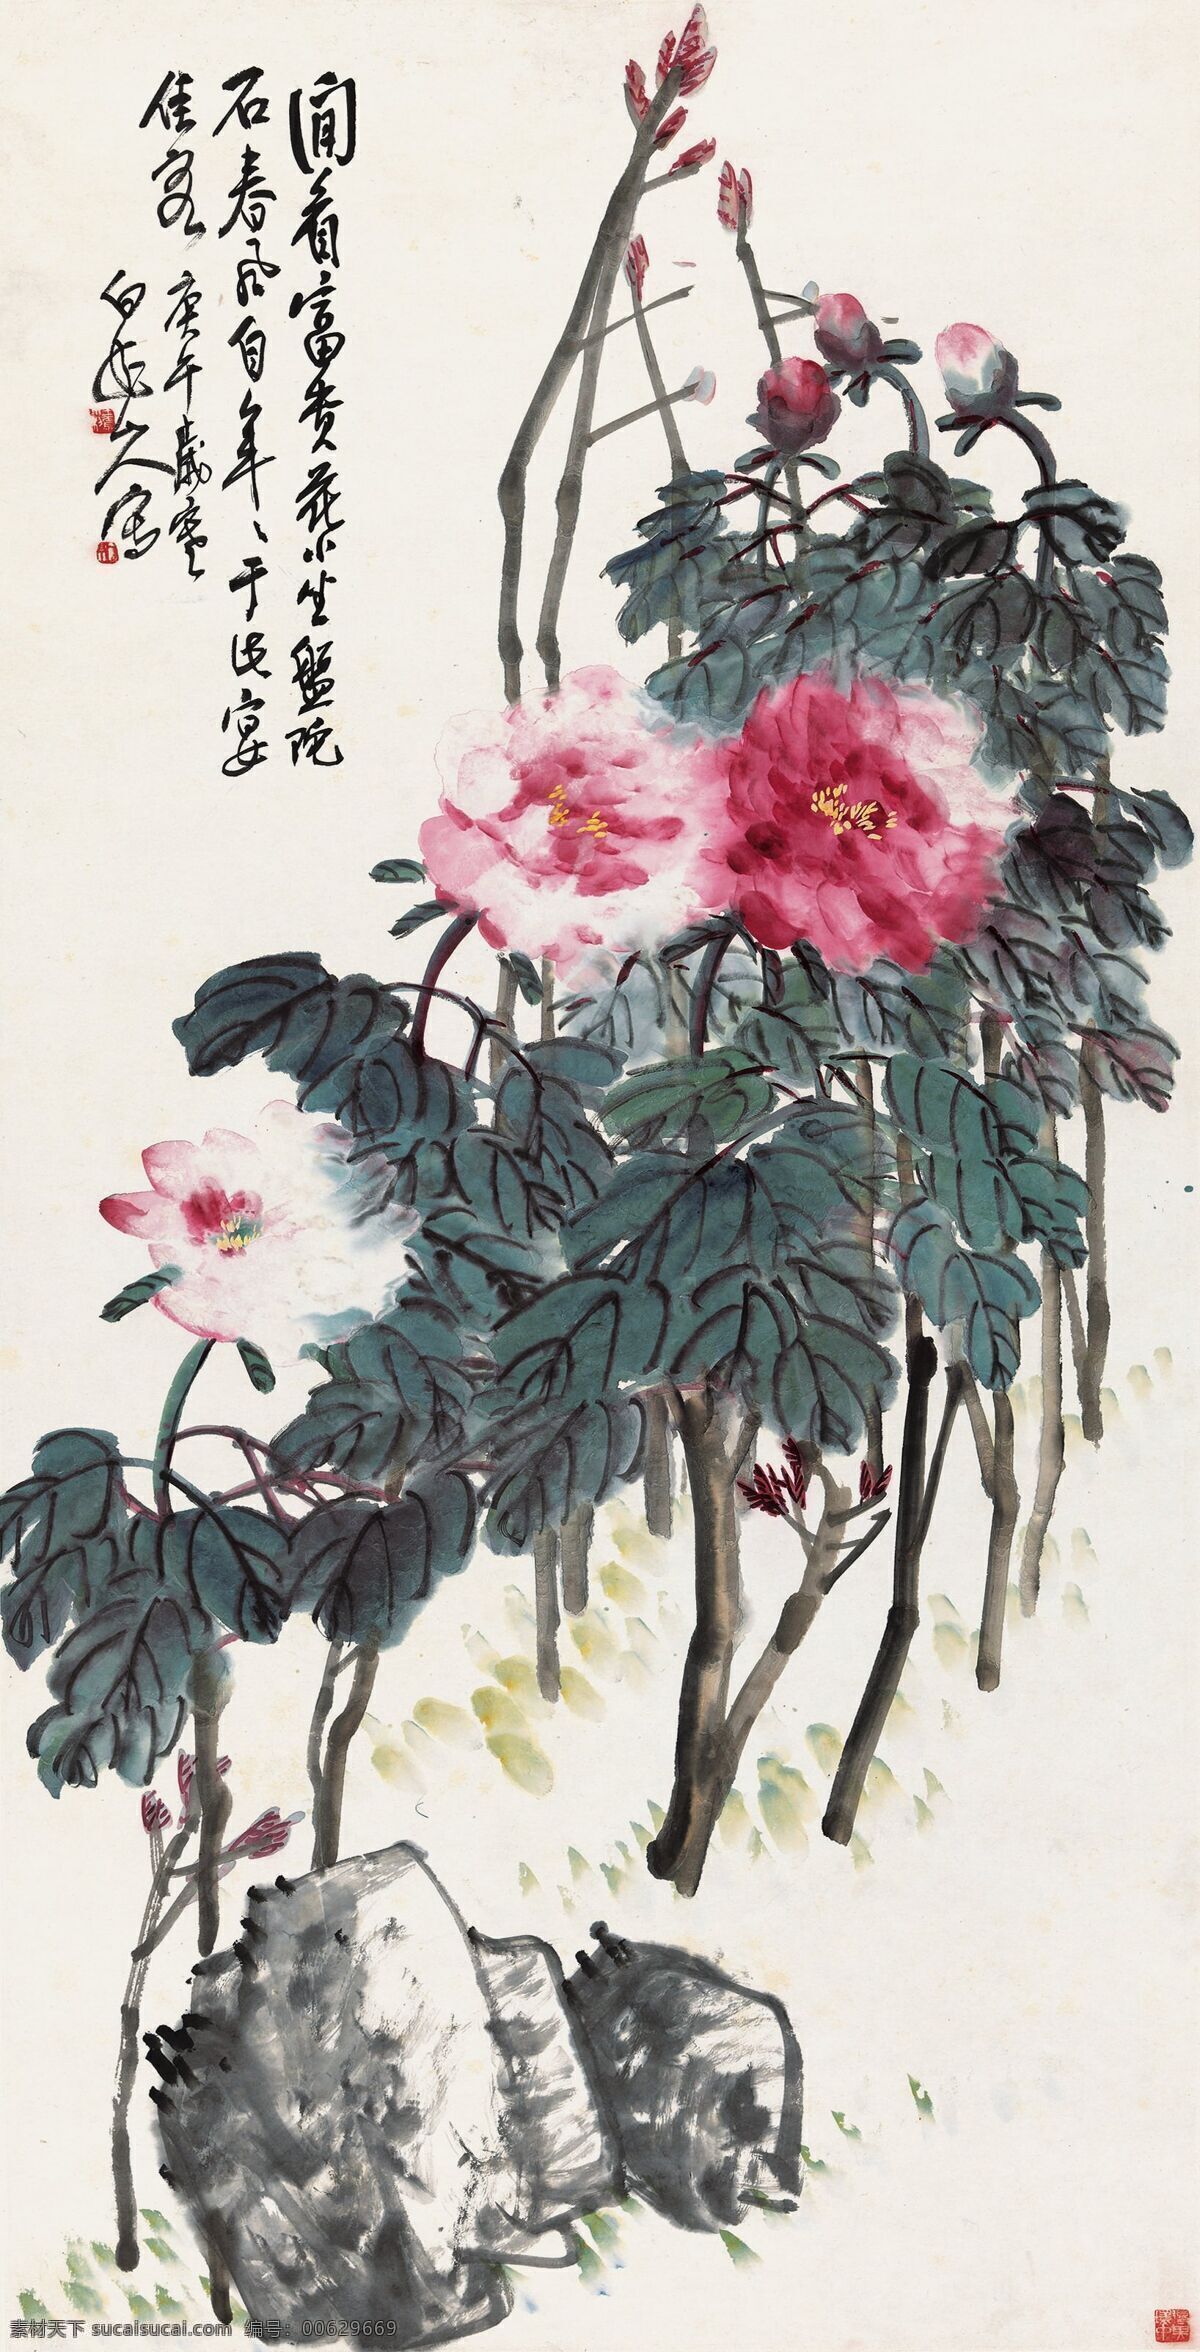 牡丹图 齐良己作品 齐白石之子 国色天香 奇石 中国古代画 中国古画 文化艺术 绘画书法